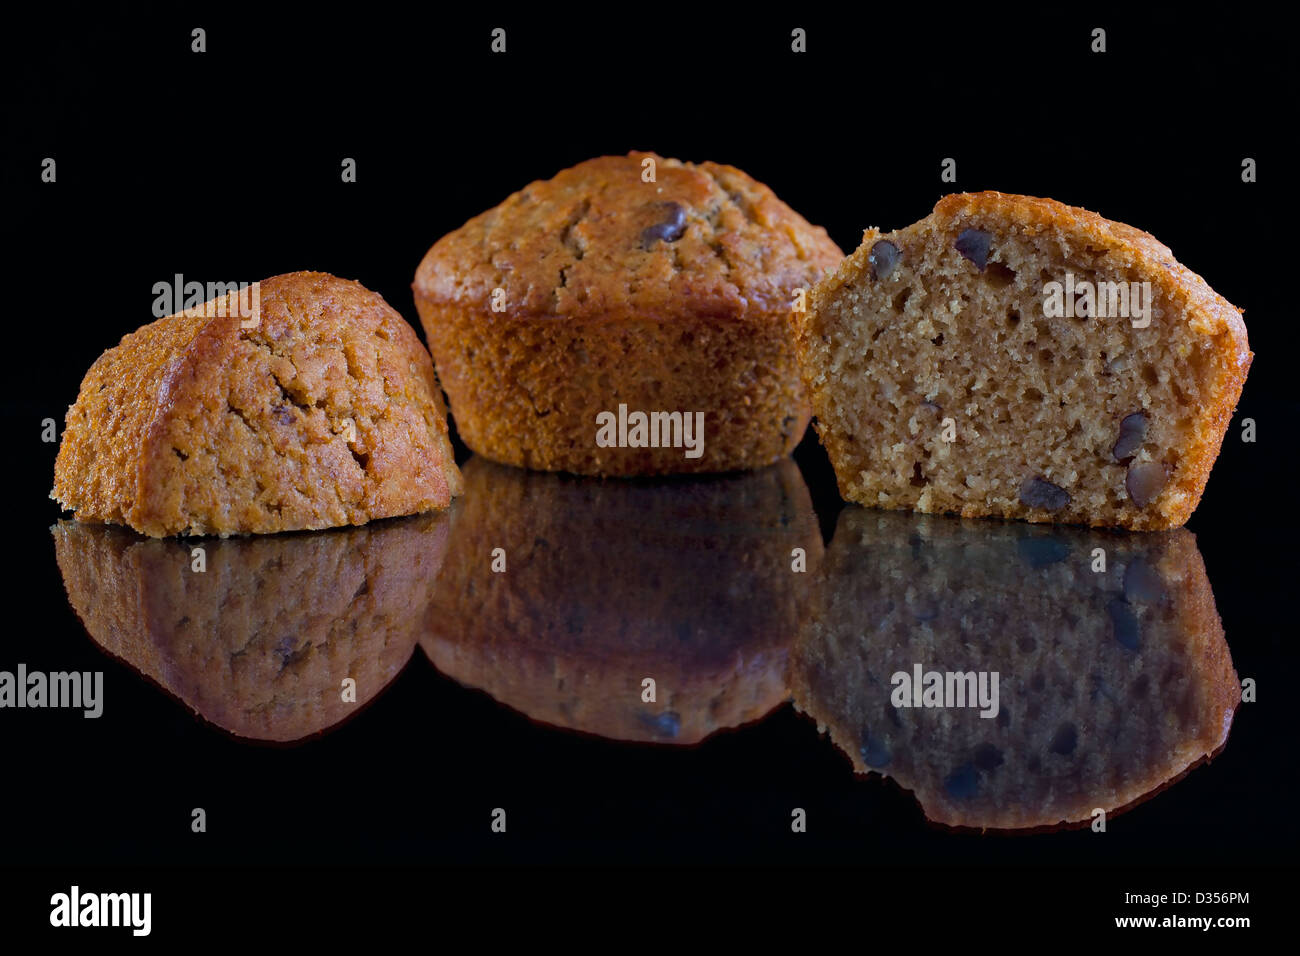 Des petits muffins noix sur une surface noire réfléchissante Banque D'Images